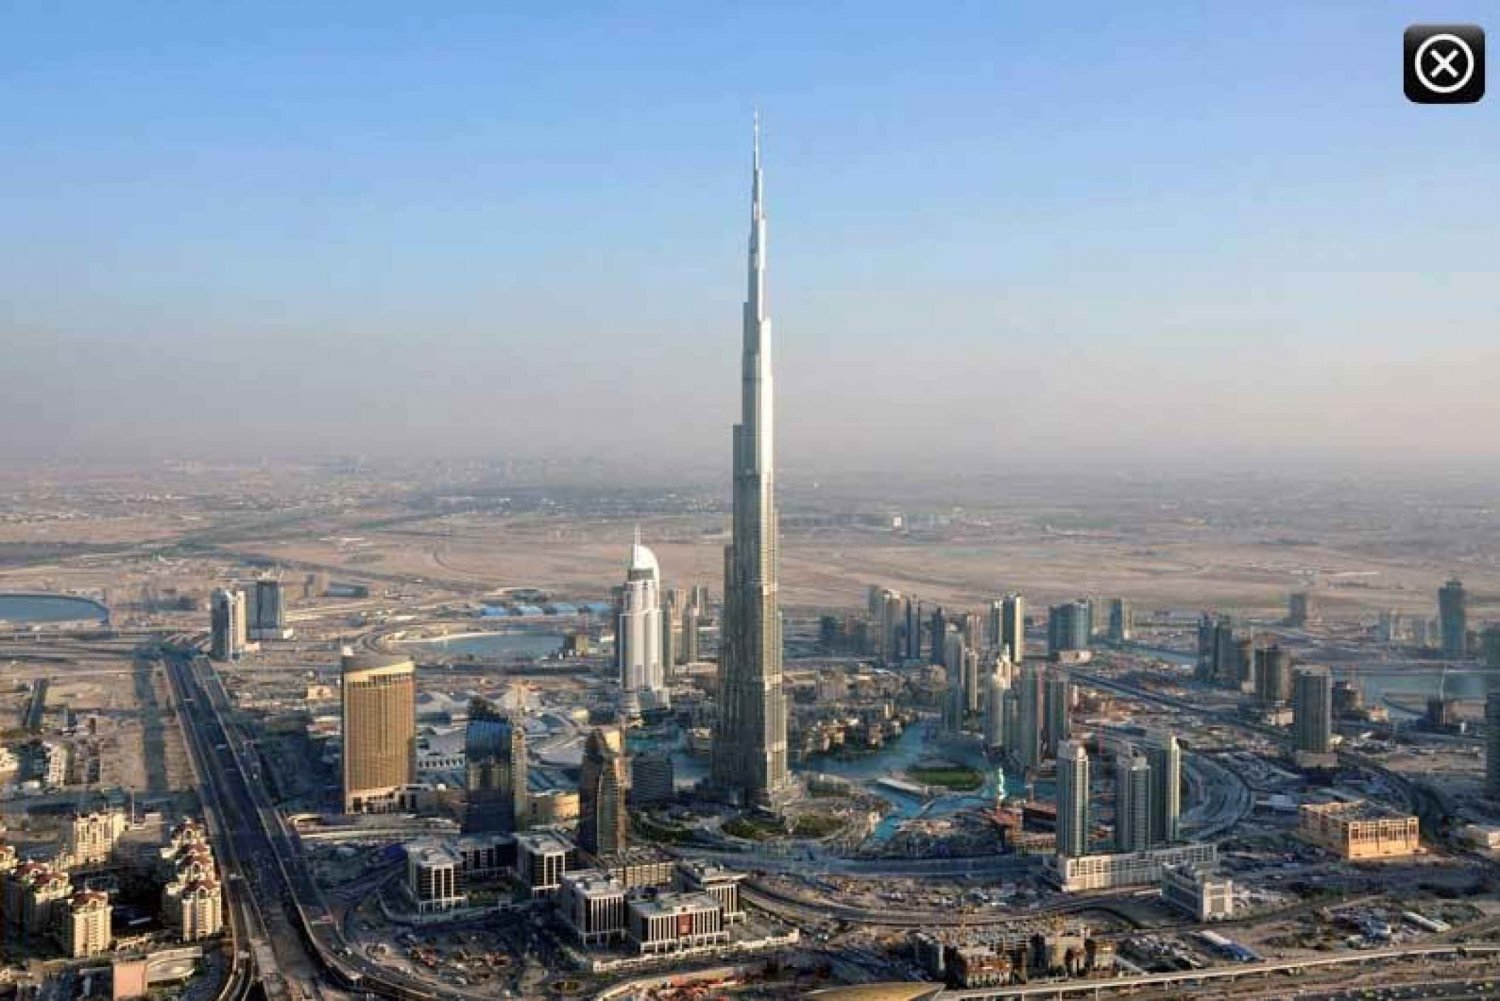 Yhdensuuntainen yksityiskyyti Dubain & Abu Dhabin välillä